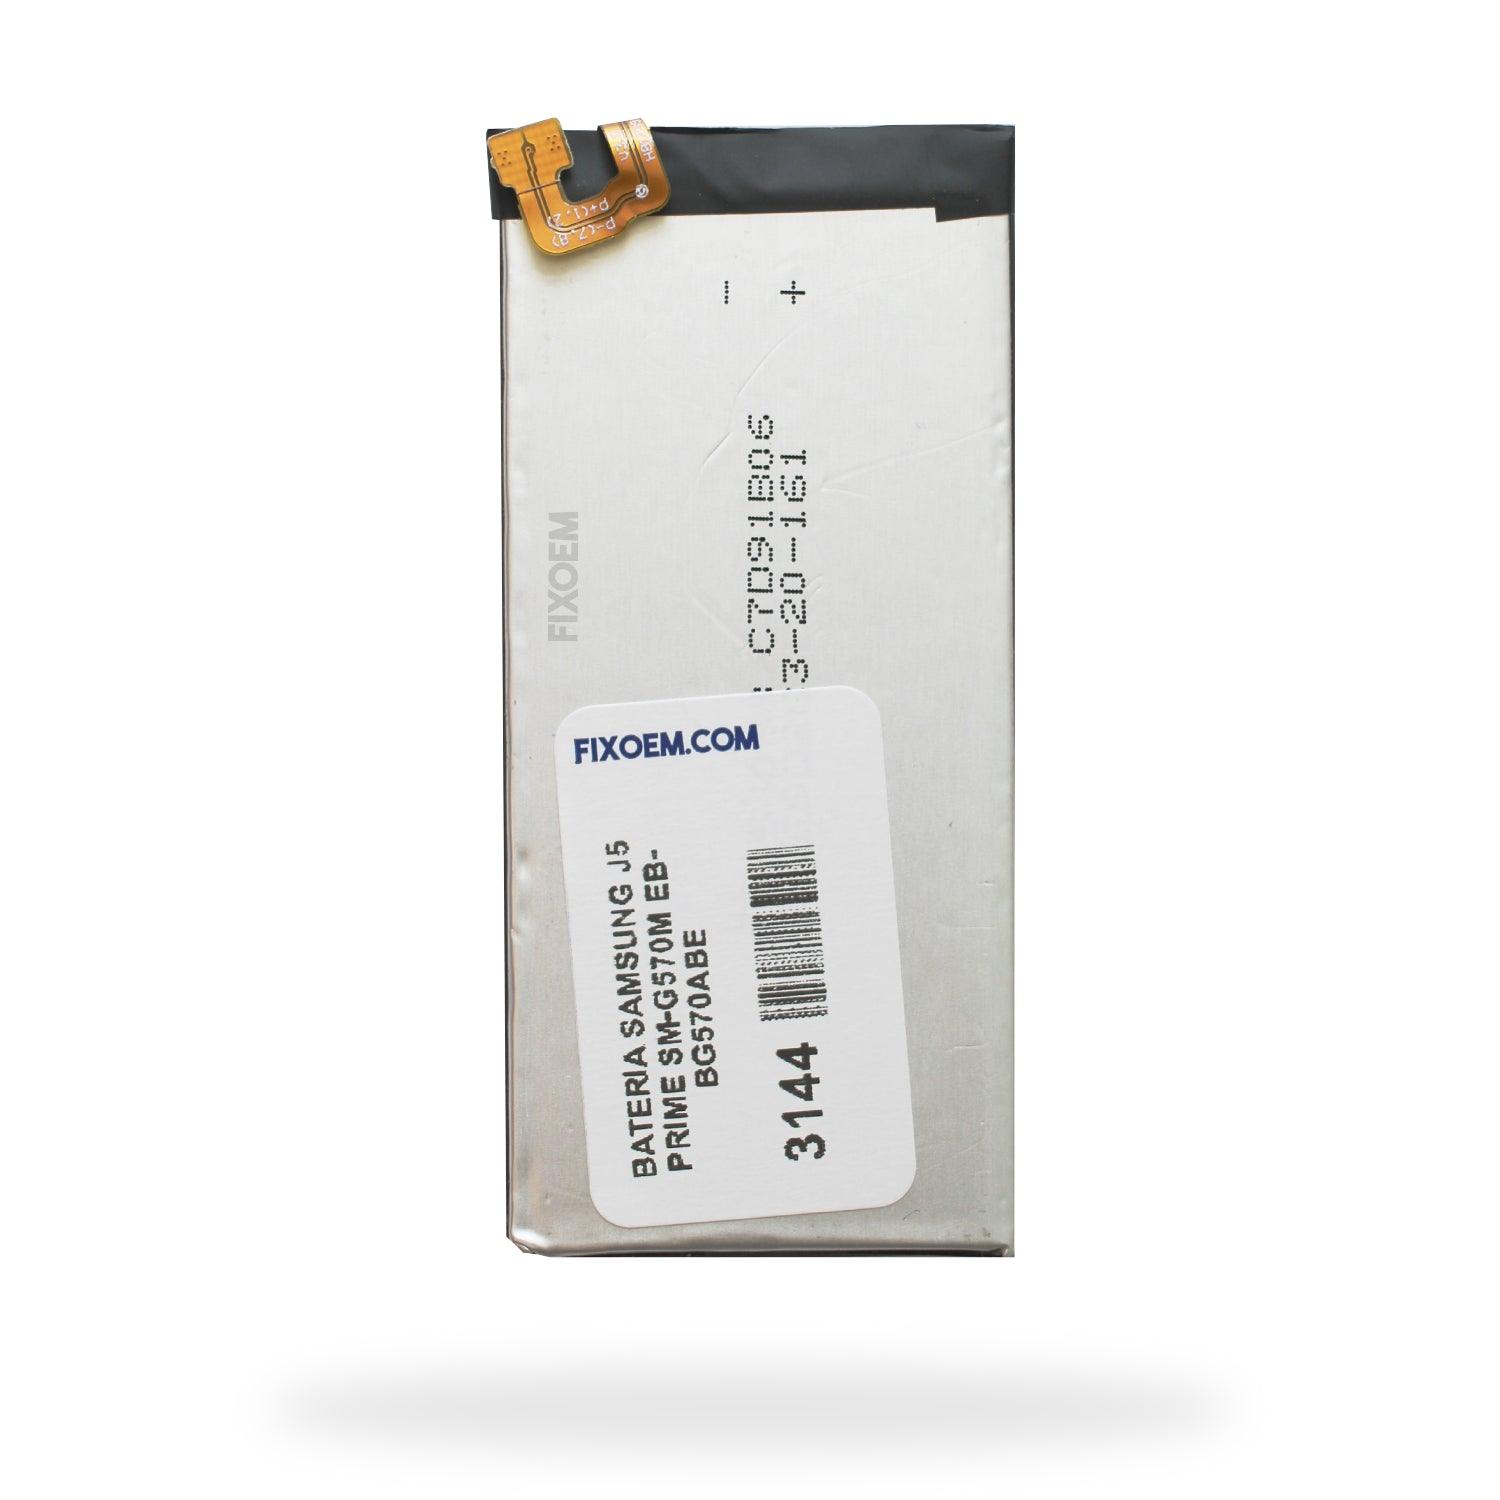 Bateria Samsung J5 Prime Sm-G570M Eb-Bg570Abe a solo $ 120.00 Refaccion y puestos celulares, refurbish y microelectronica.- FixOEM